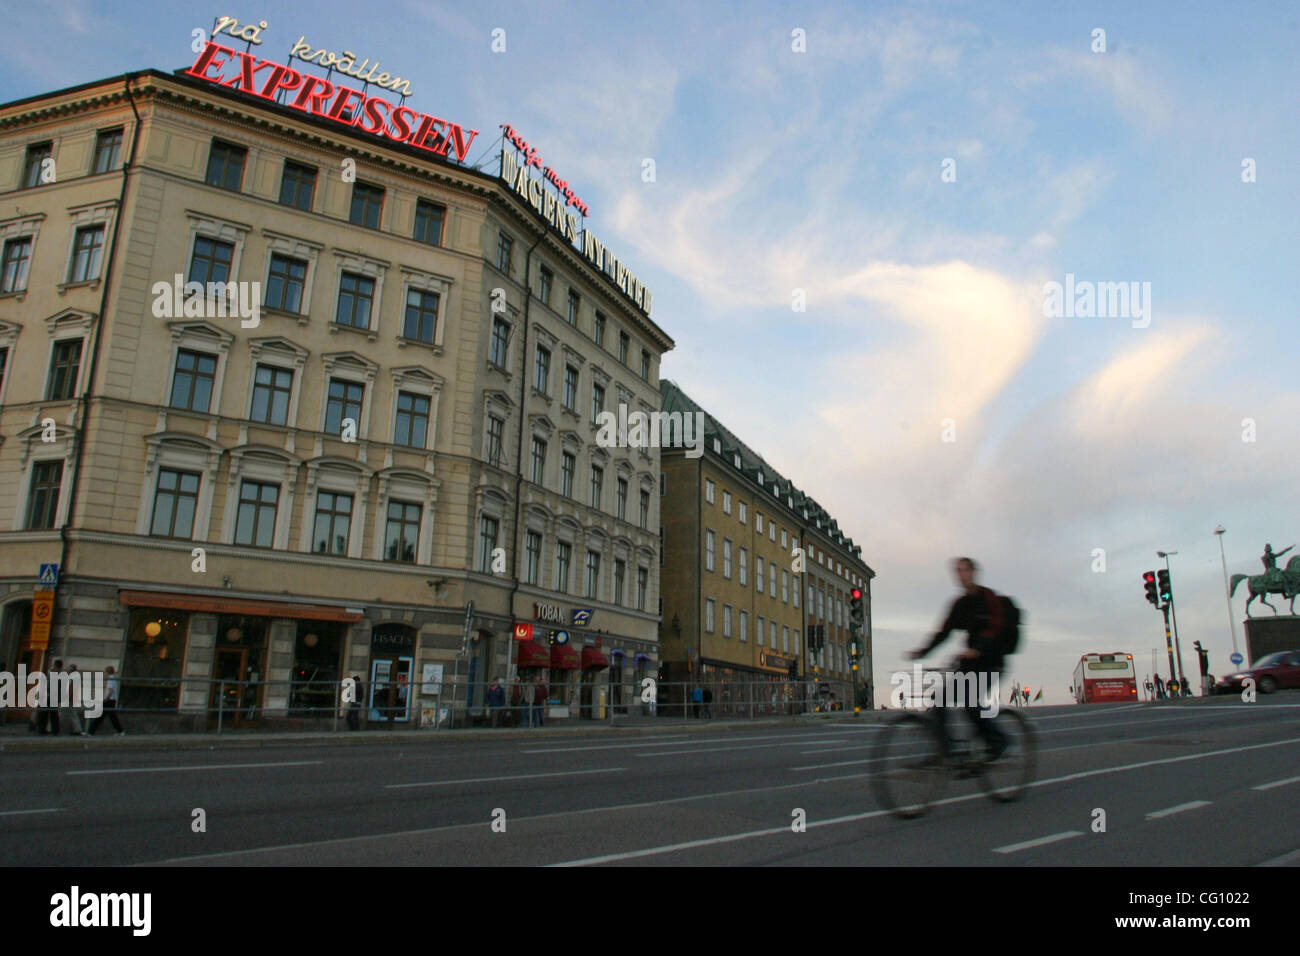 Jul 18, 2007 - Stockholm, Suède - cyclistes sur le chemin de la maison. Stockholm est la capitale et la plus grande ville de Suède et, par conséquent, le site de l'gouvernement suédois et le Parlement ainsi que la résidence officielle du monarque suédois. Stockholm a été la volonté politique et économique 100 Banque D'Images